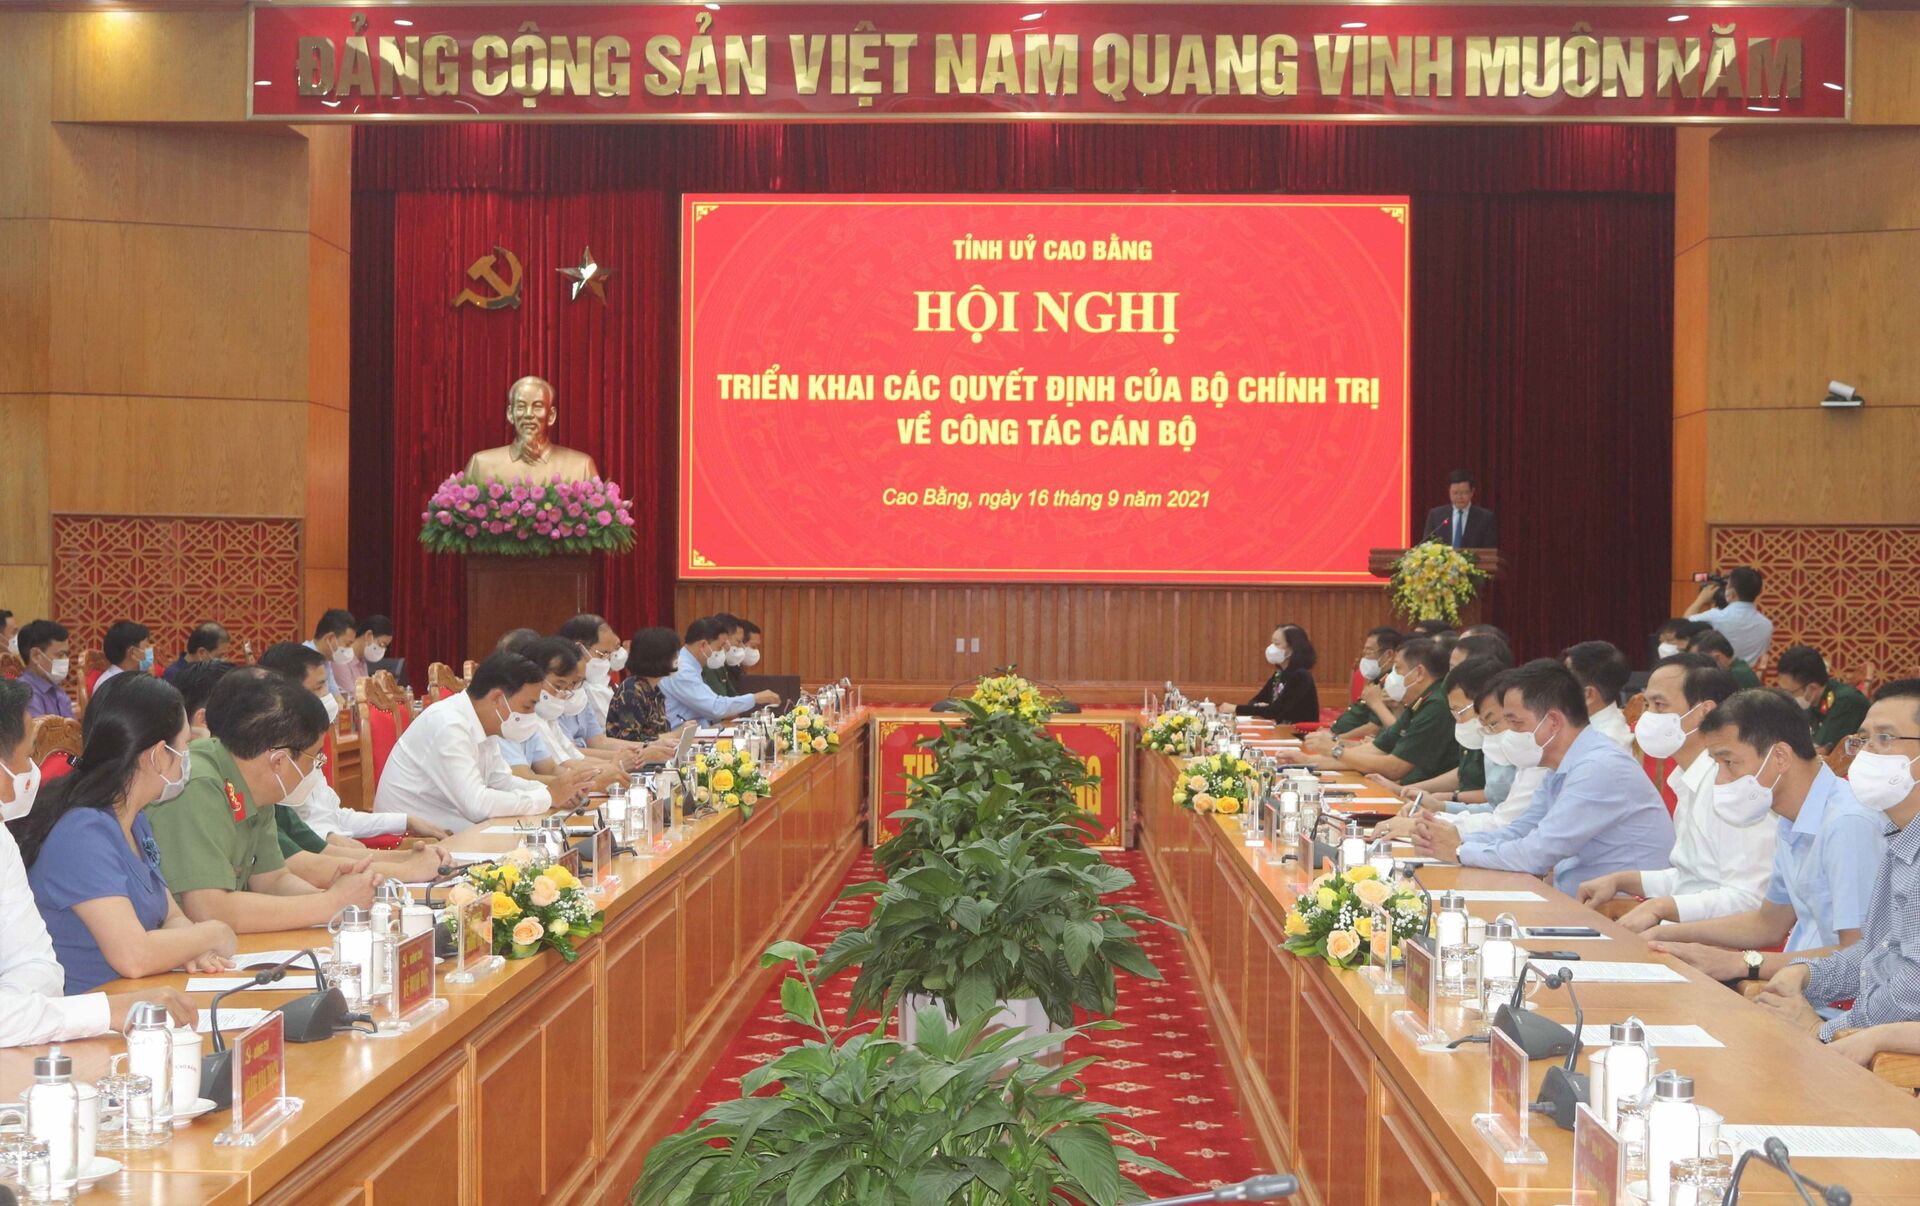 Trong ảnh: Hội nghị công bố Quyết định của Bộ Chính trị về công tác cán bộ - Sputnik Việt Nam, 1920, 05.10.2021